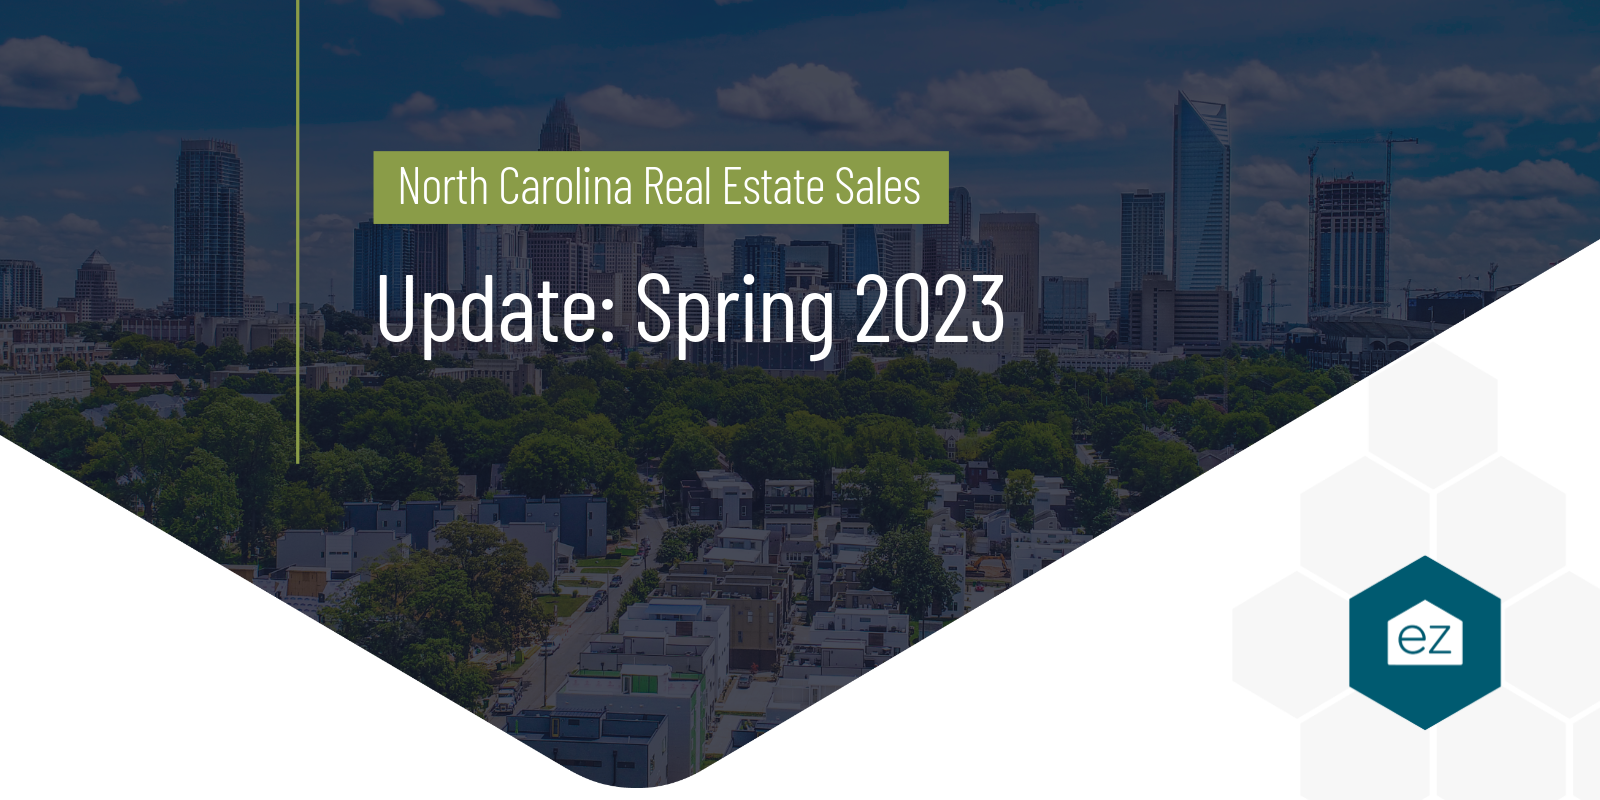 Real Estate Sales Update in North Carolina